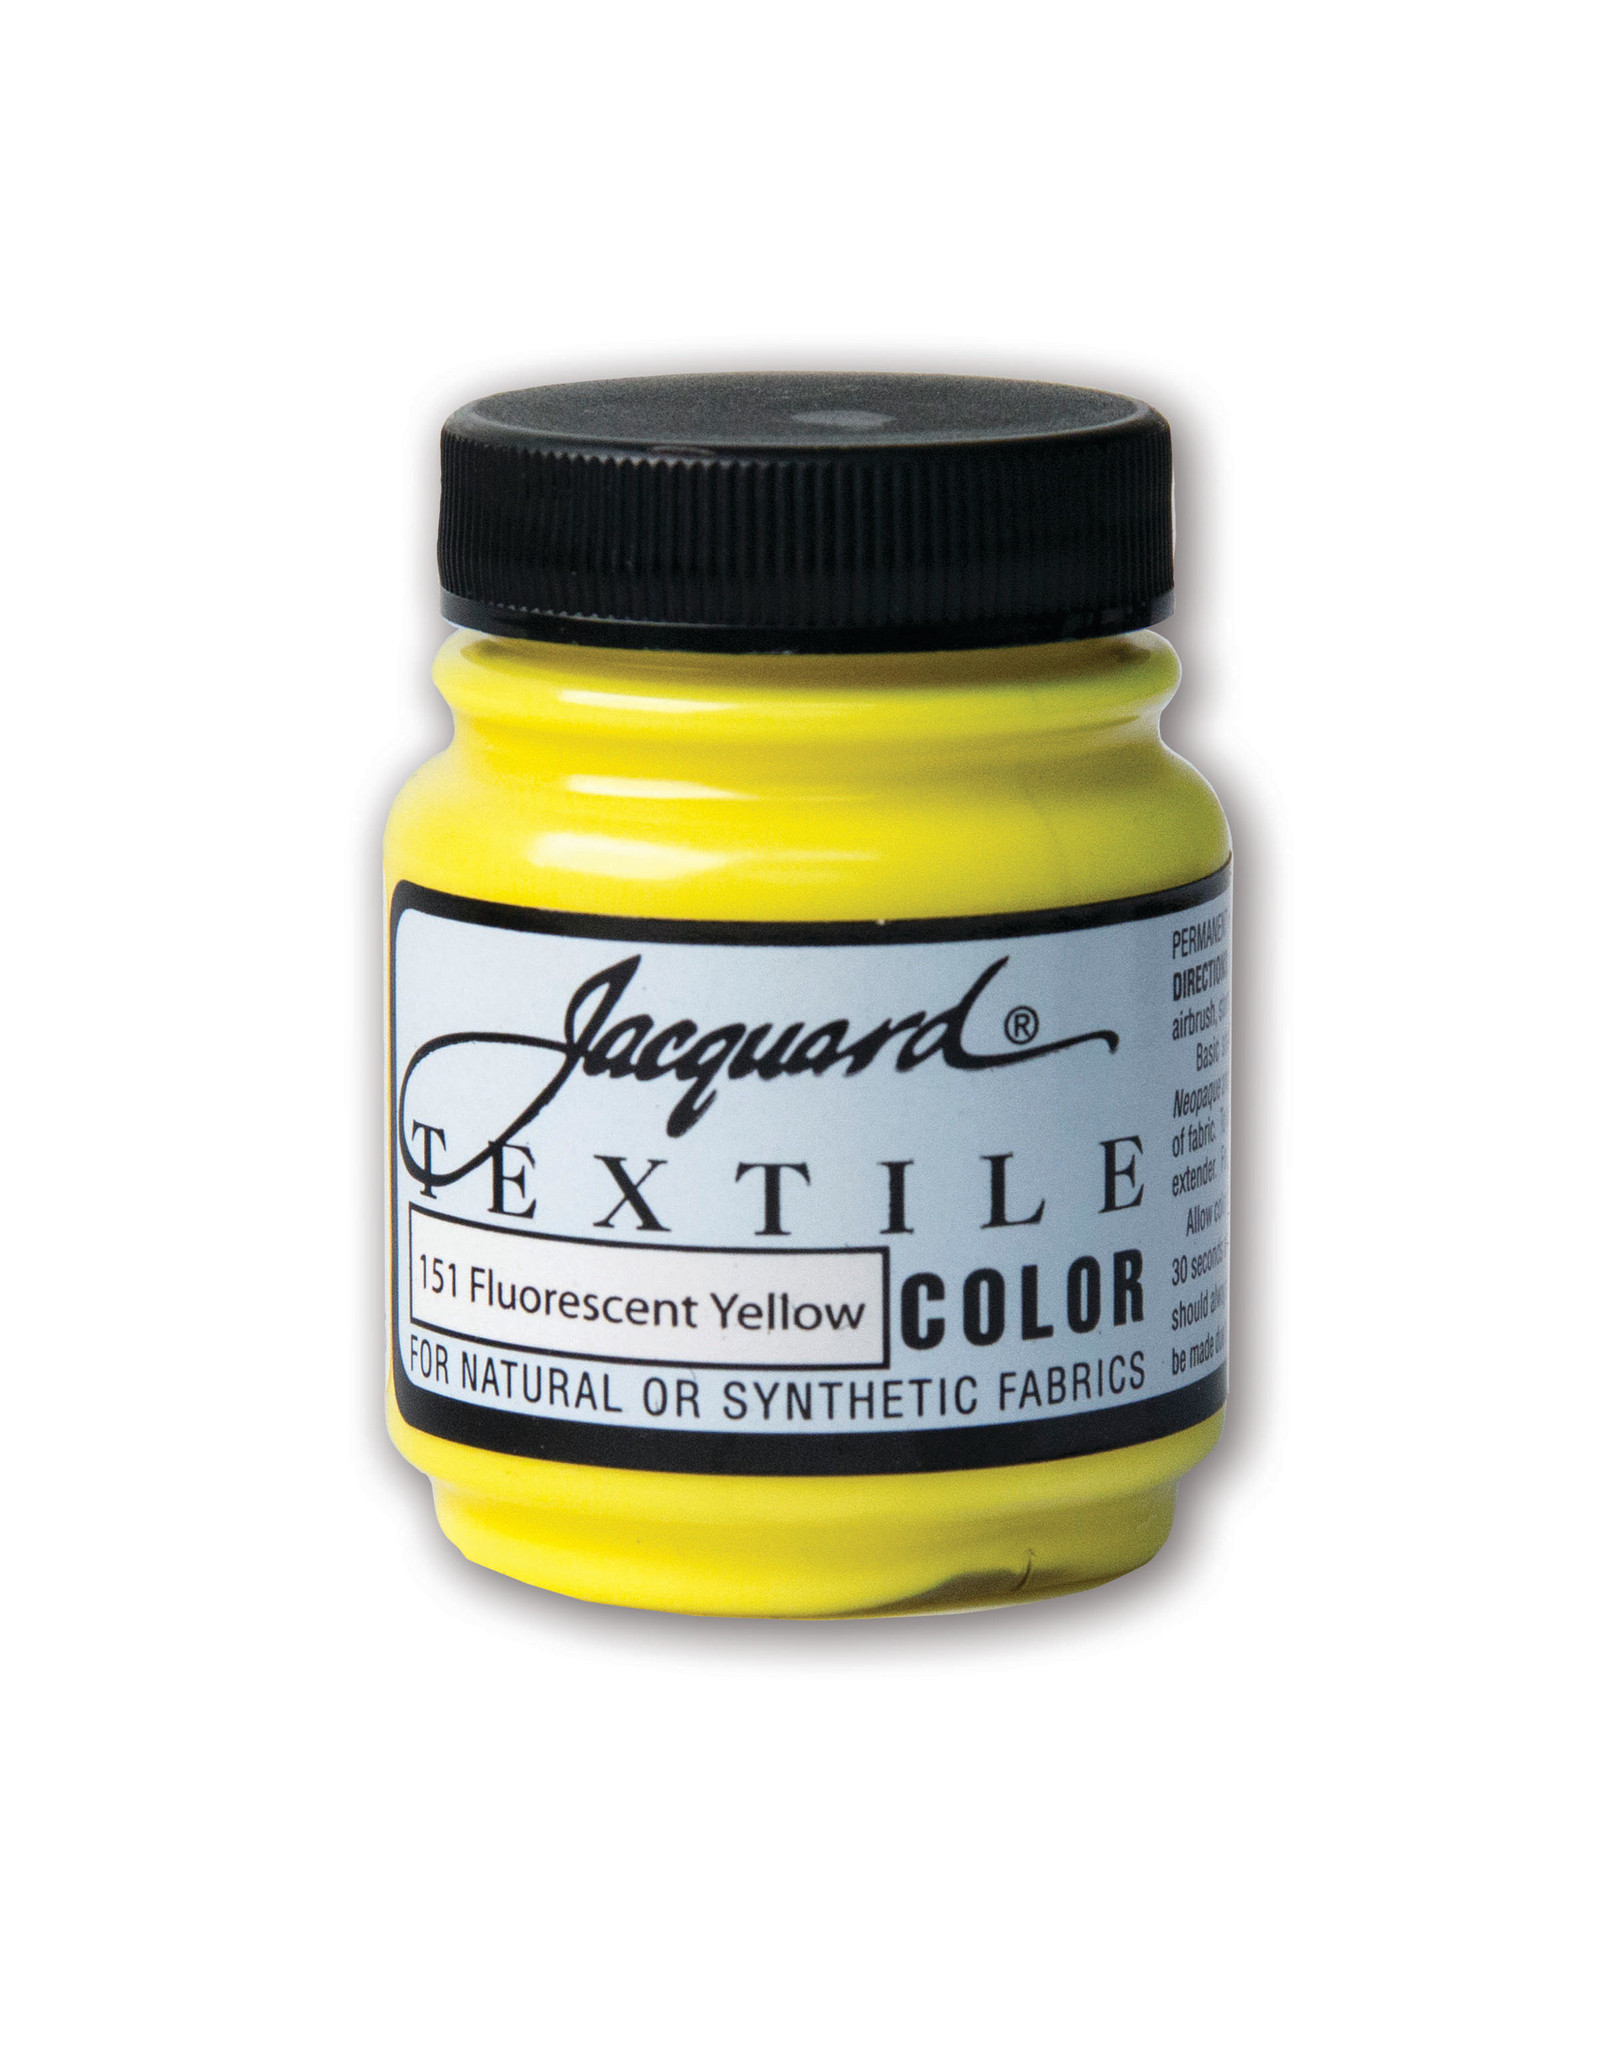 Jacquard Jacquard Textile Color, #151 Fluorescent Yellow